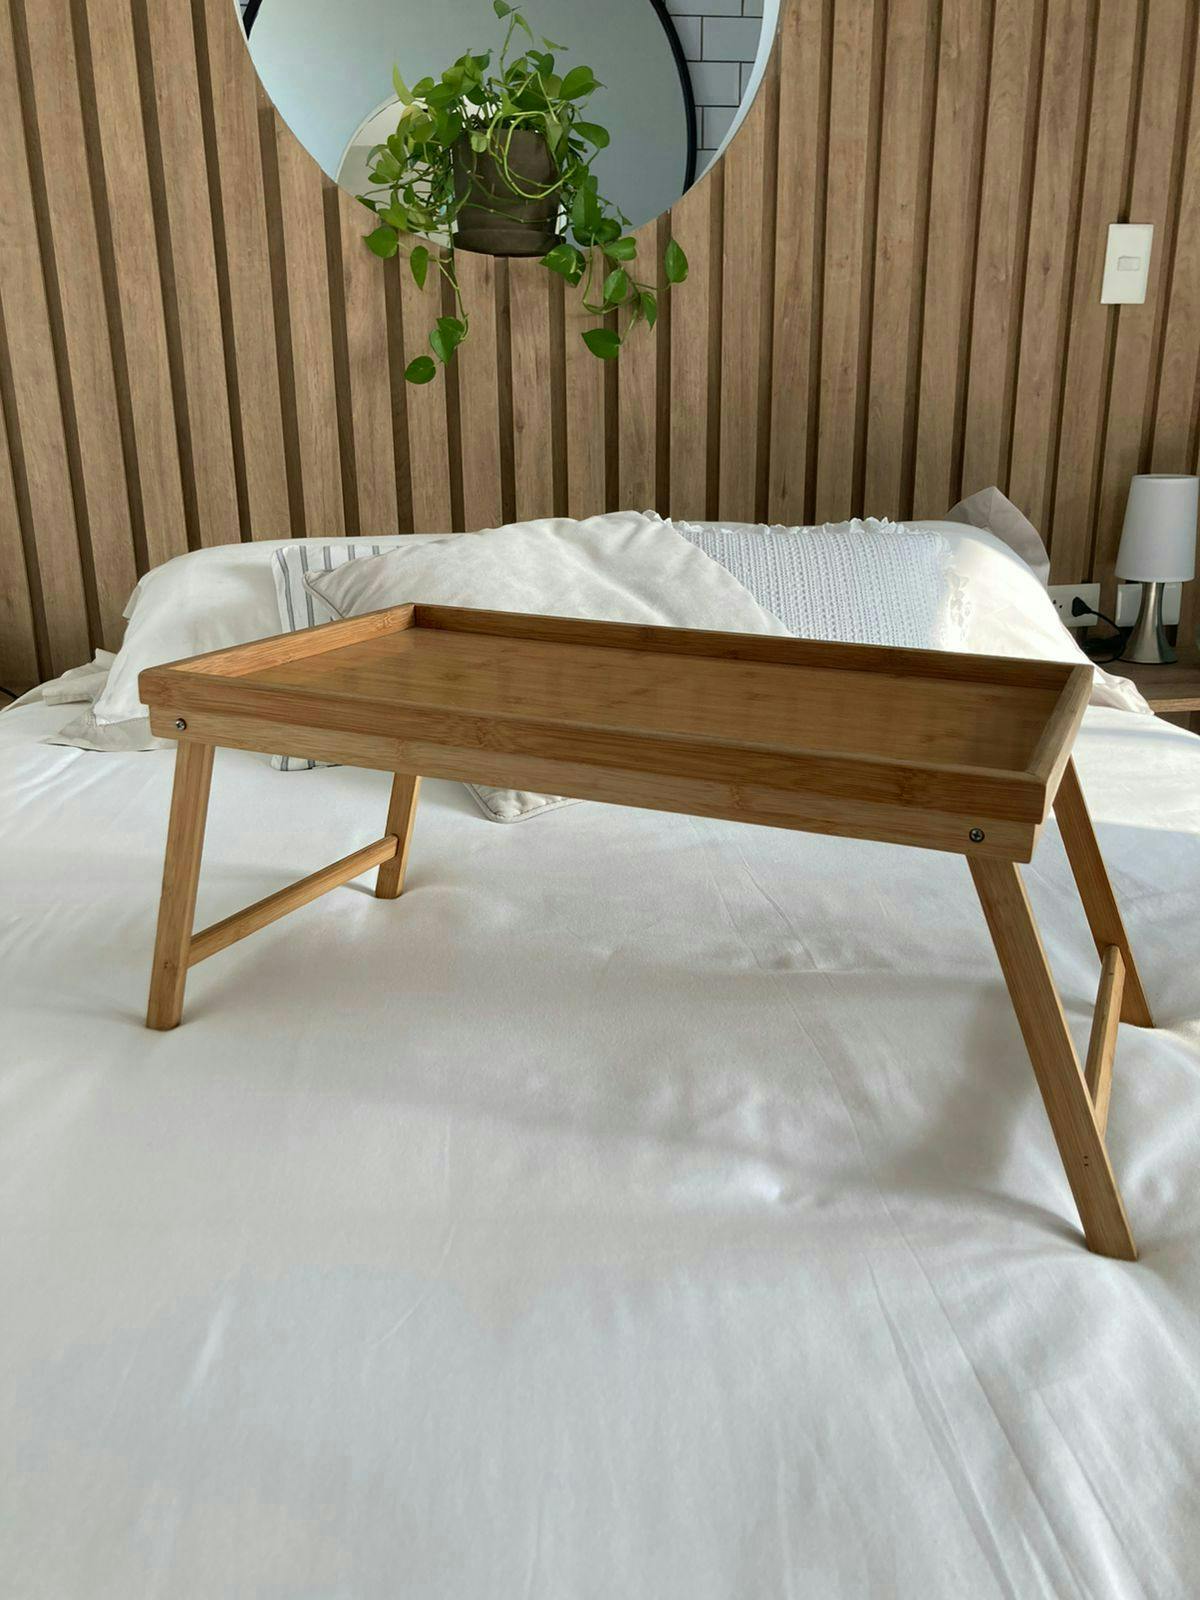 Mesita para cama de madera. 31cm x 52cm